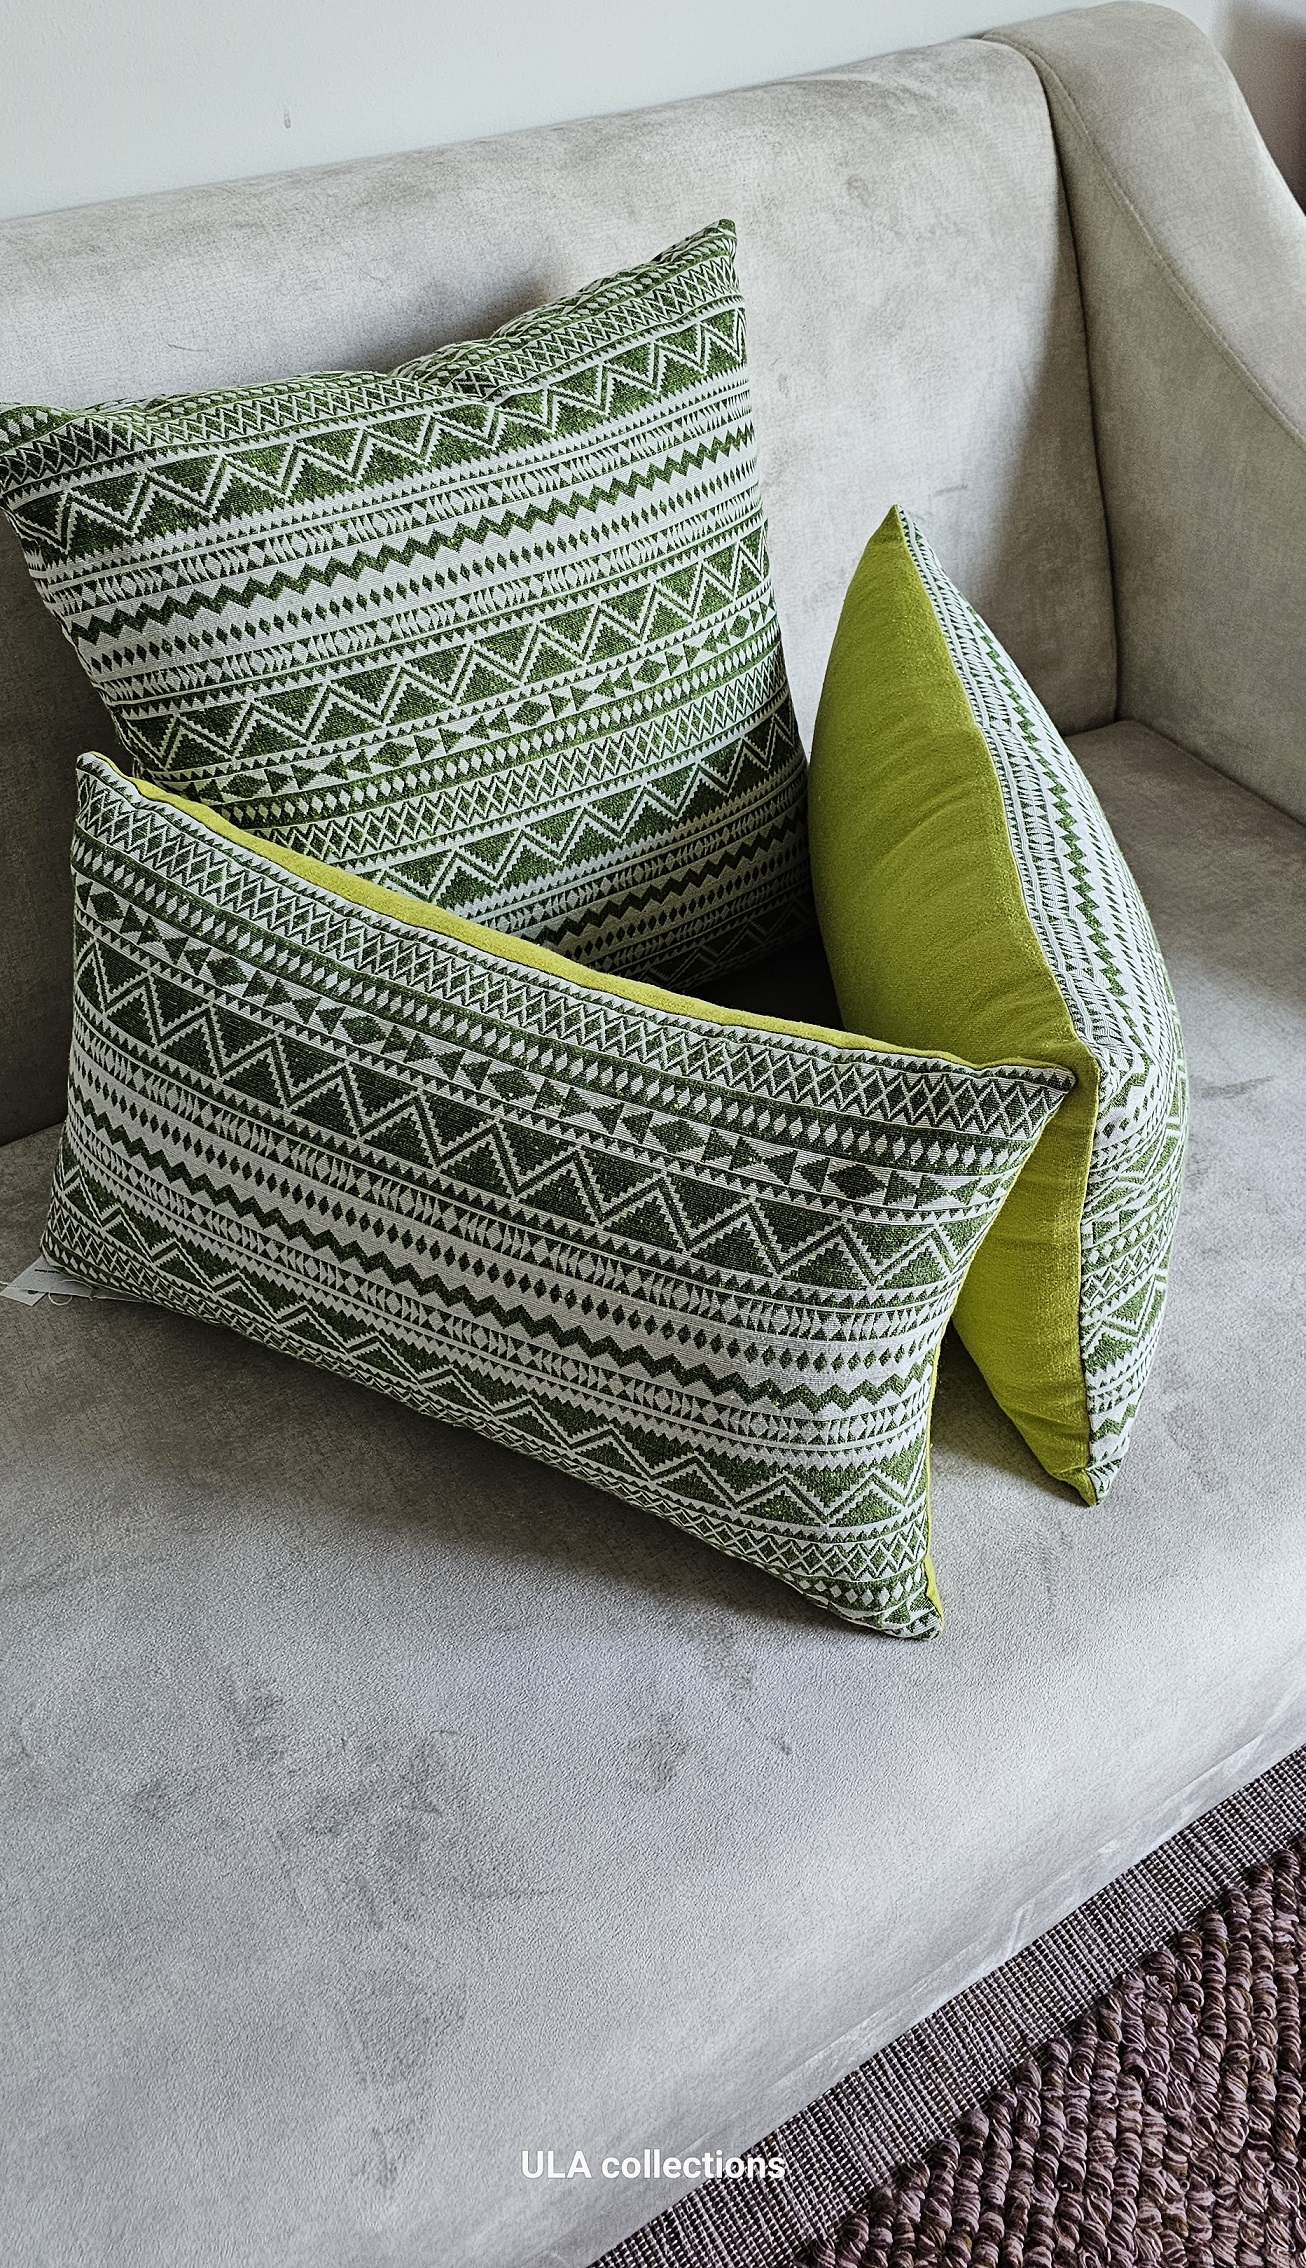 ula decorative pillow